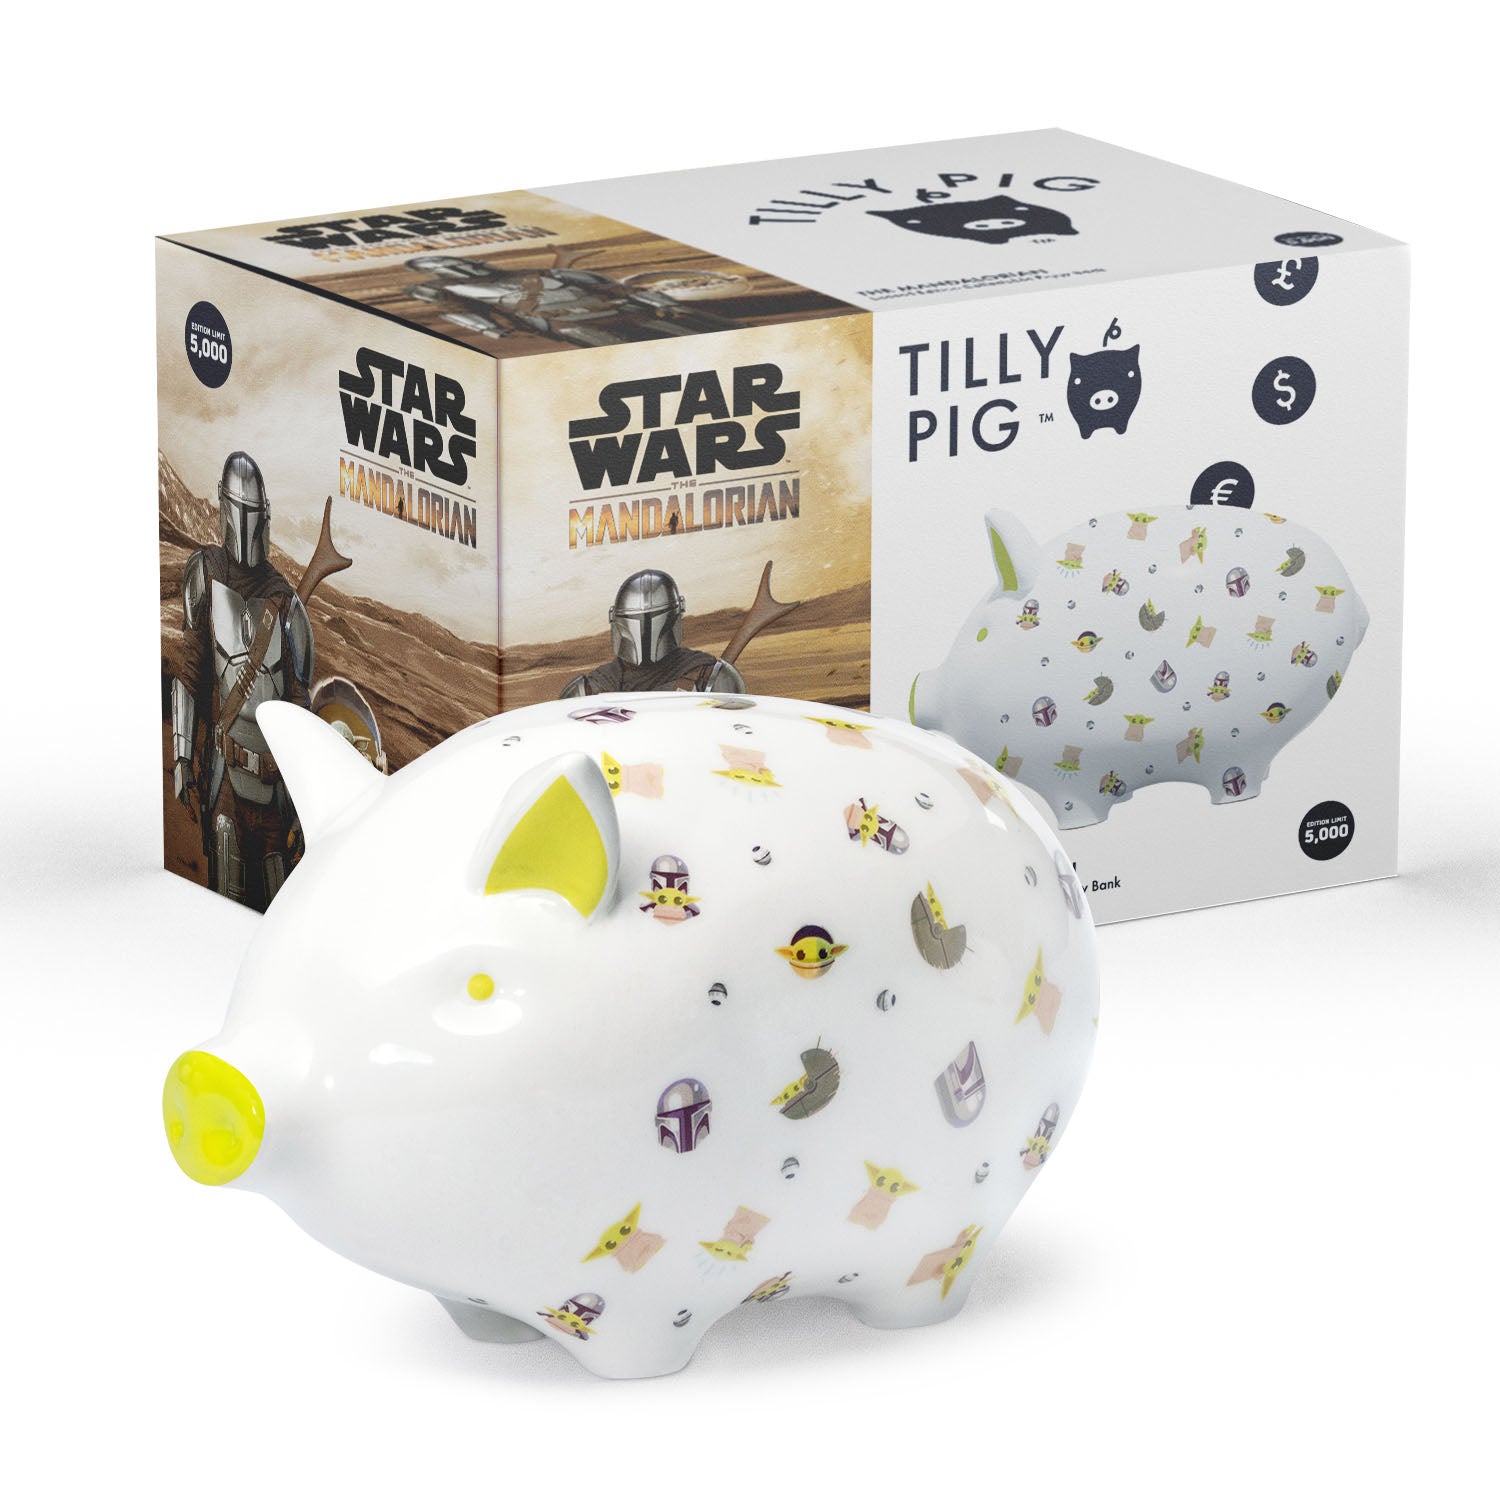 Tilly Pig - Star Wars The Mandalorian Piggy Bank